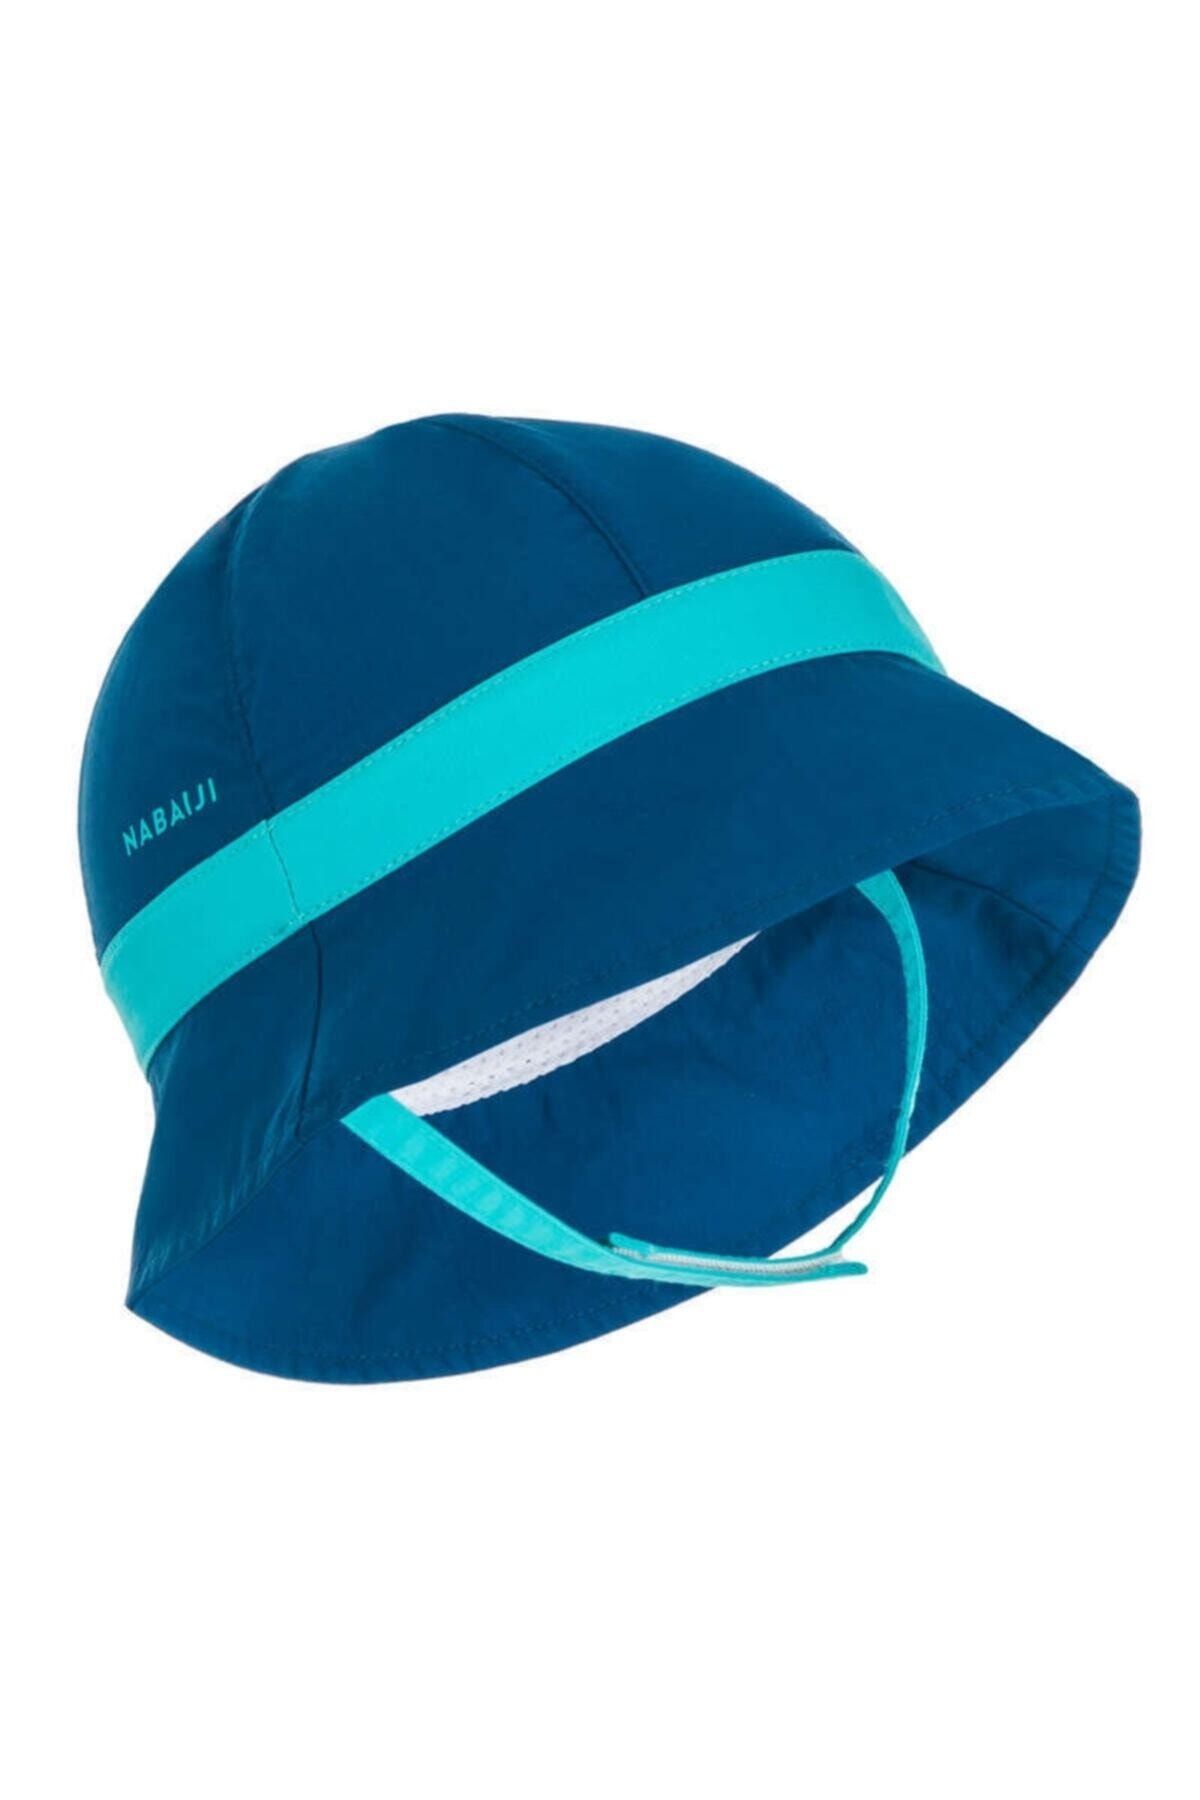 Decathlon Bebek Şapkası Uv Korumalı Mavi Nabaıjı